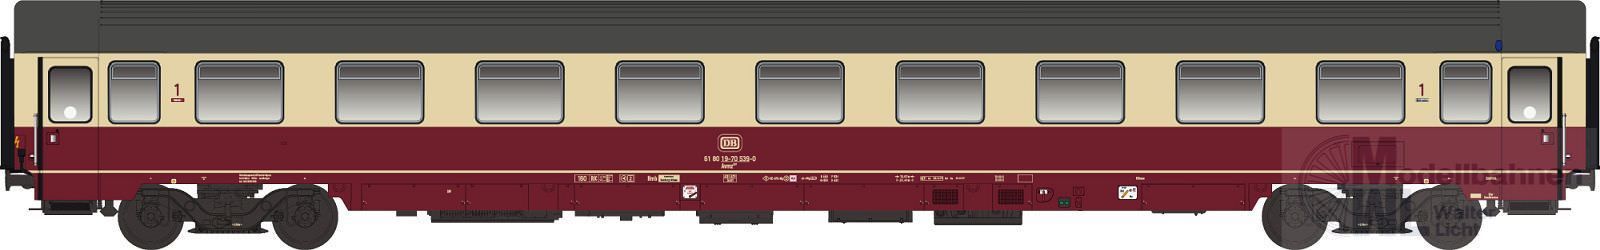 Jägerndorfer Modellbahn 46174 - Personenwagen DB Ep.IV Avmz 207 1.Kl. H0/GL